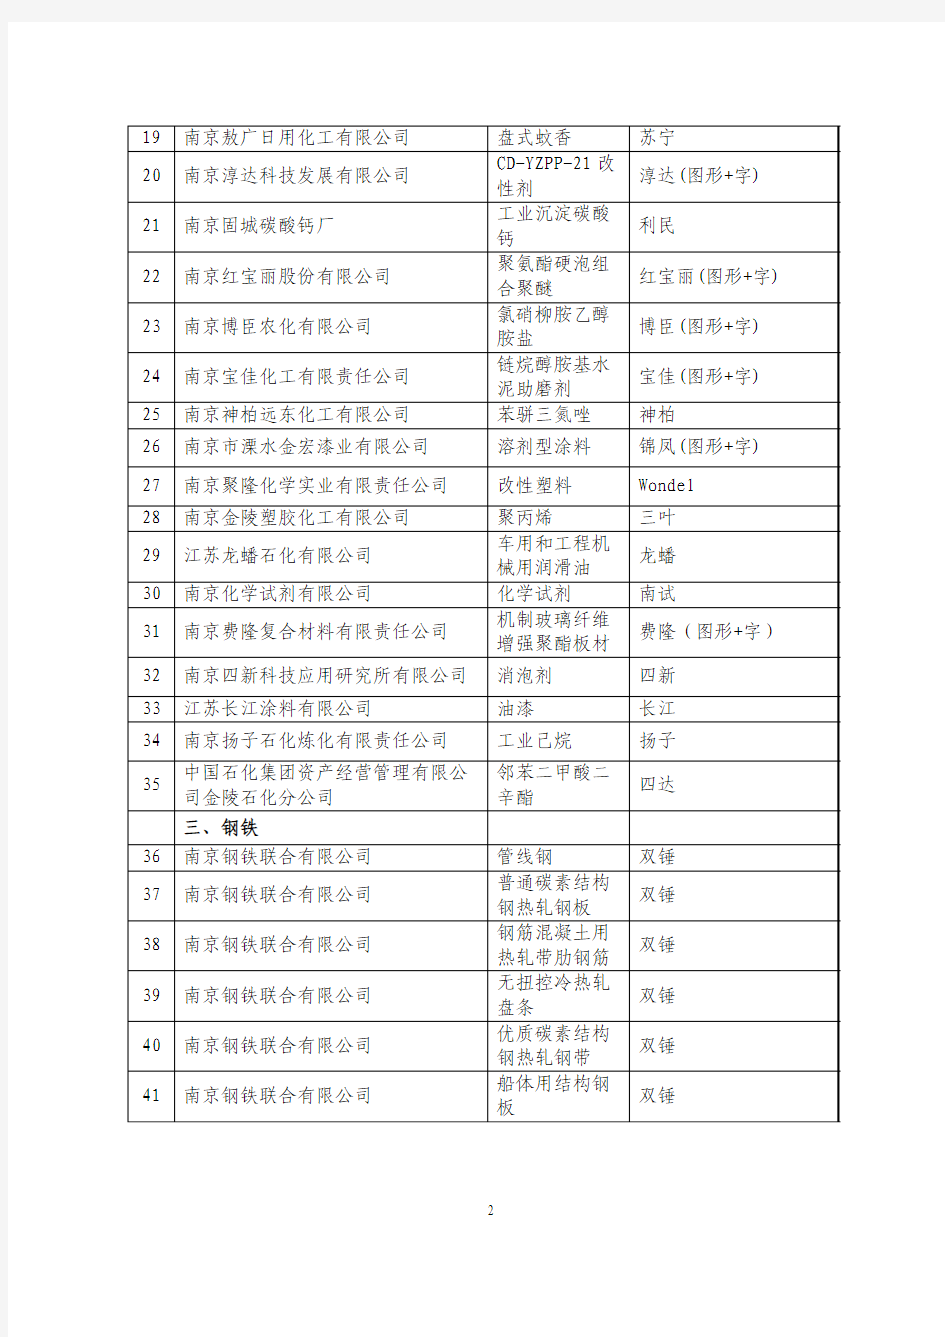 2009年南京名牌产品公示名单